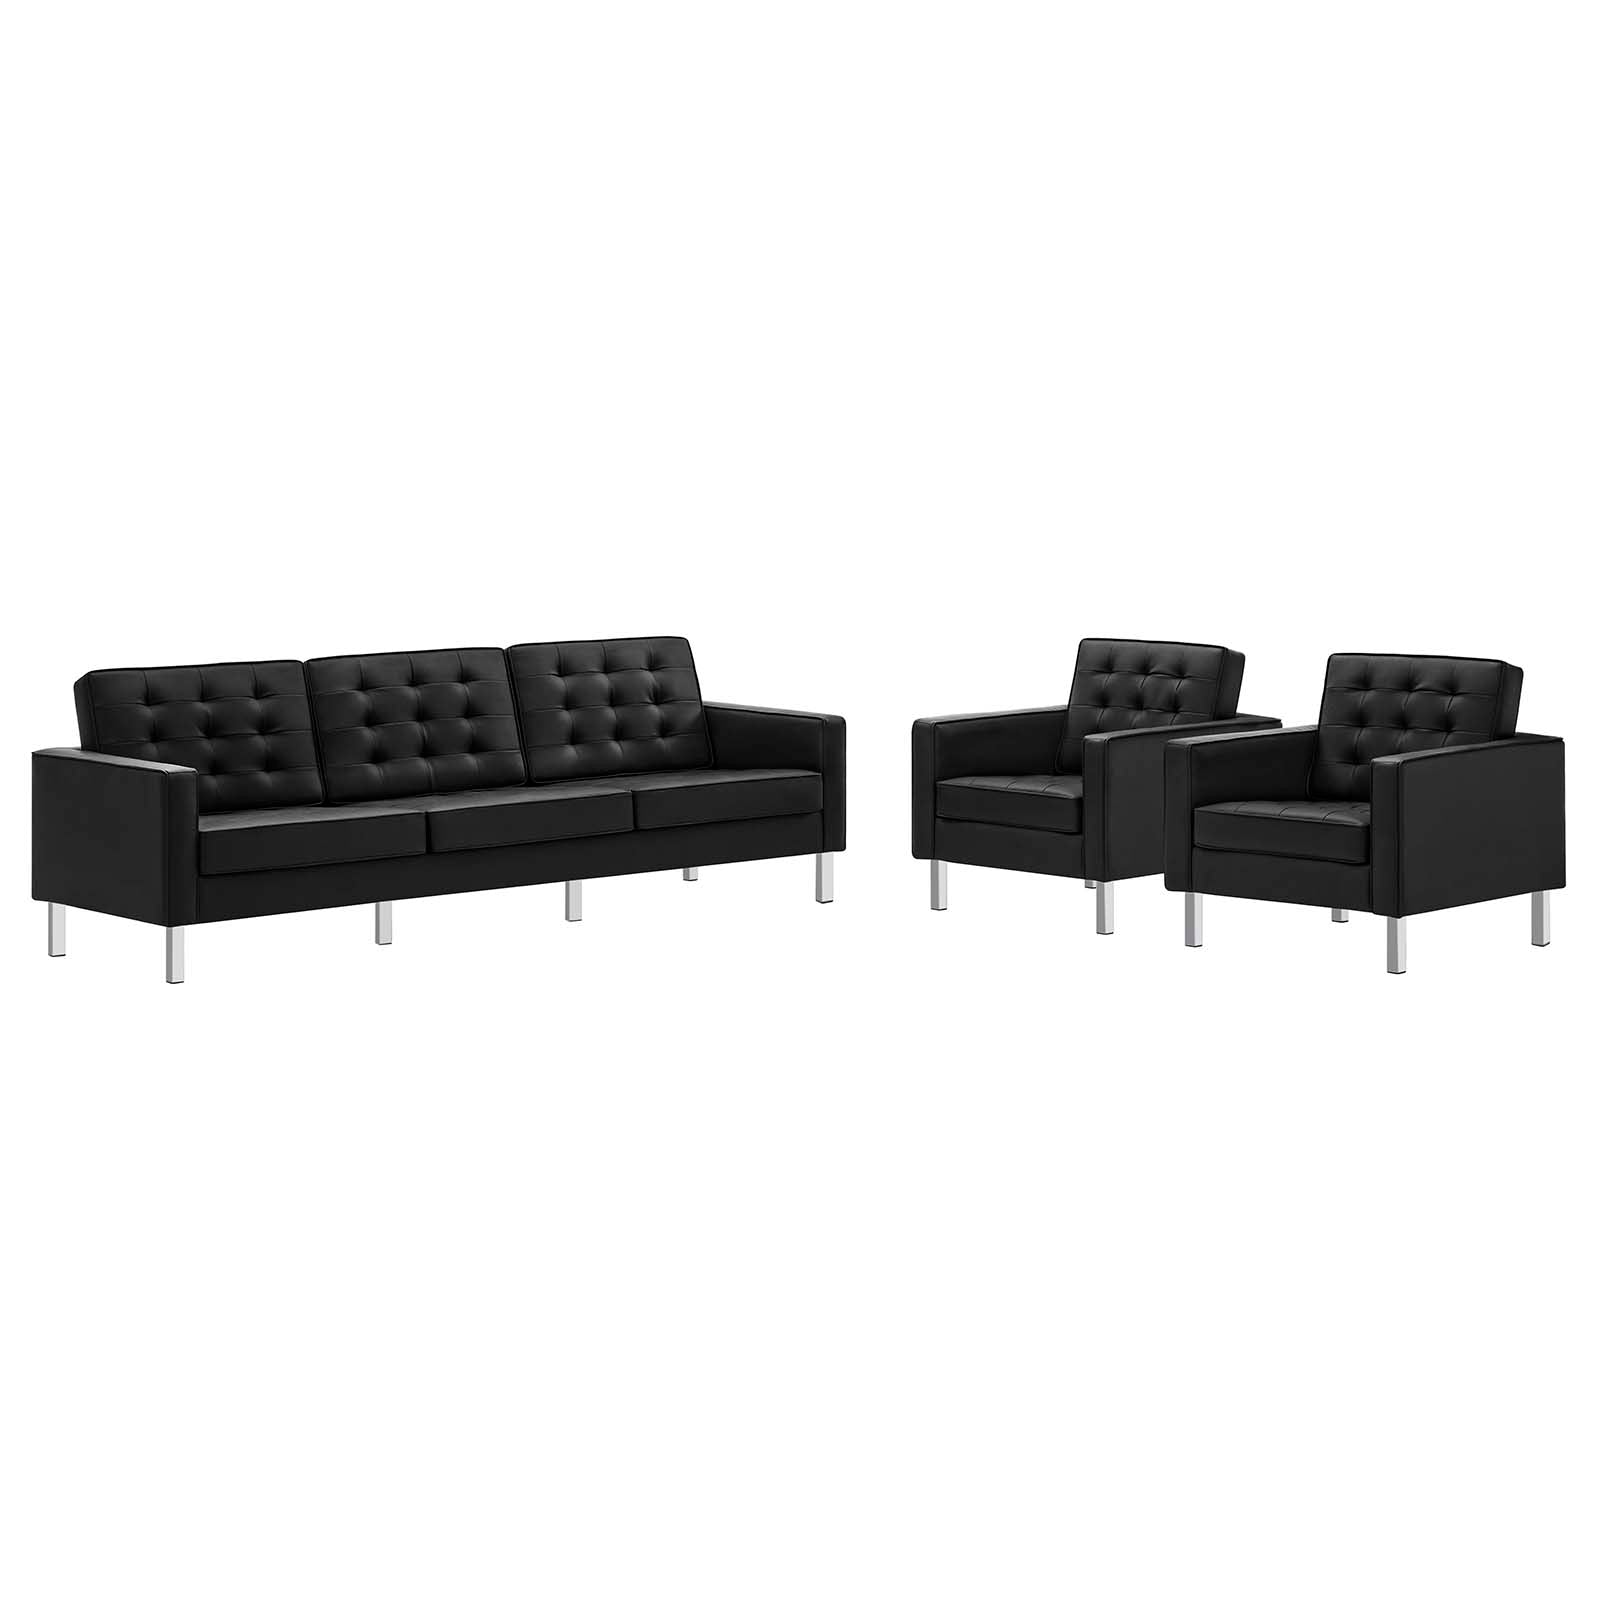 Modway Living Room Sets - Loft-Tufted-Vegan-Leather-3-Piece-Furniture-Set-Silver-Black